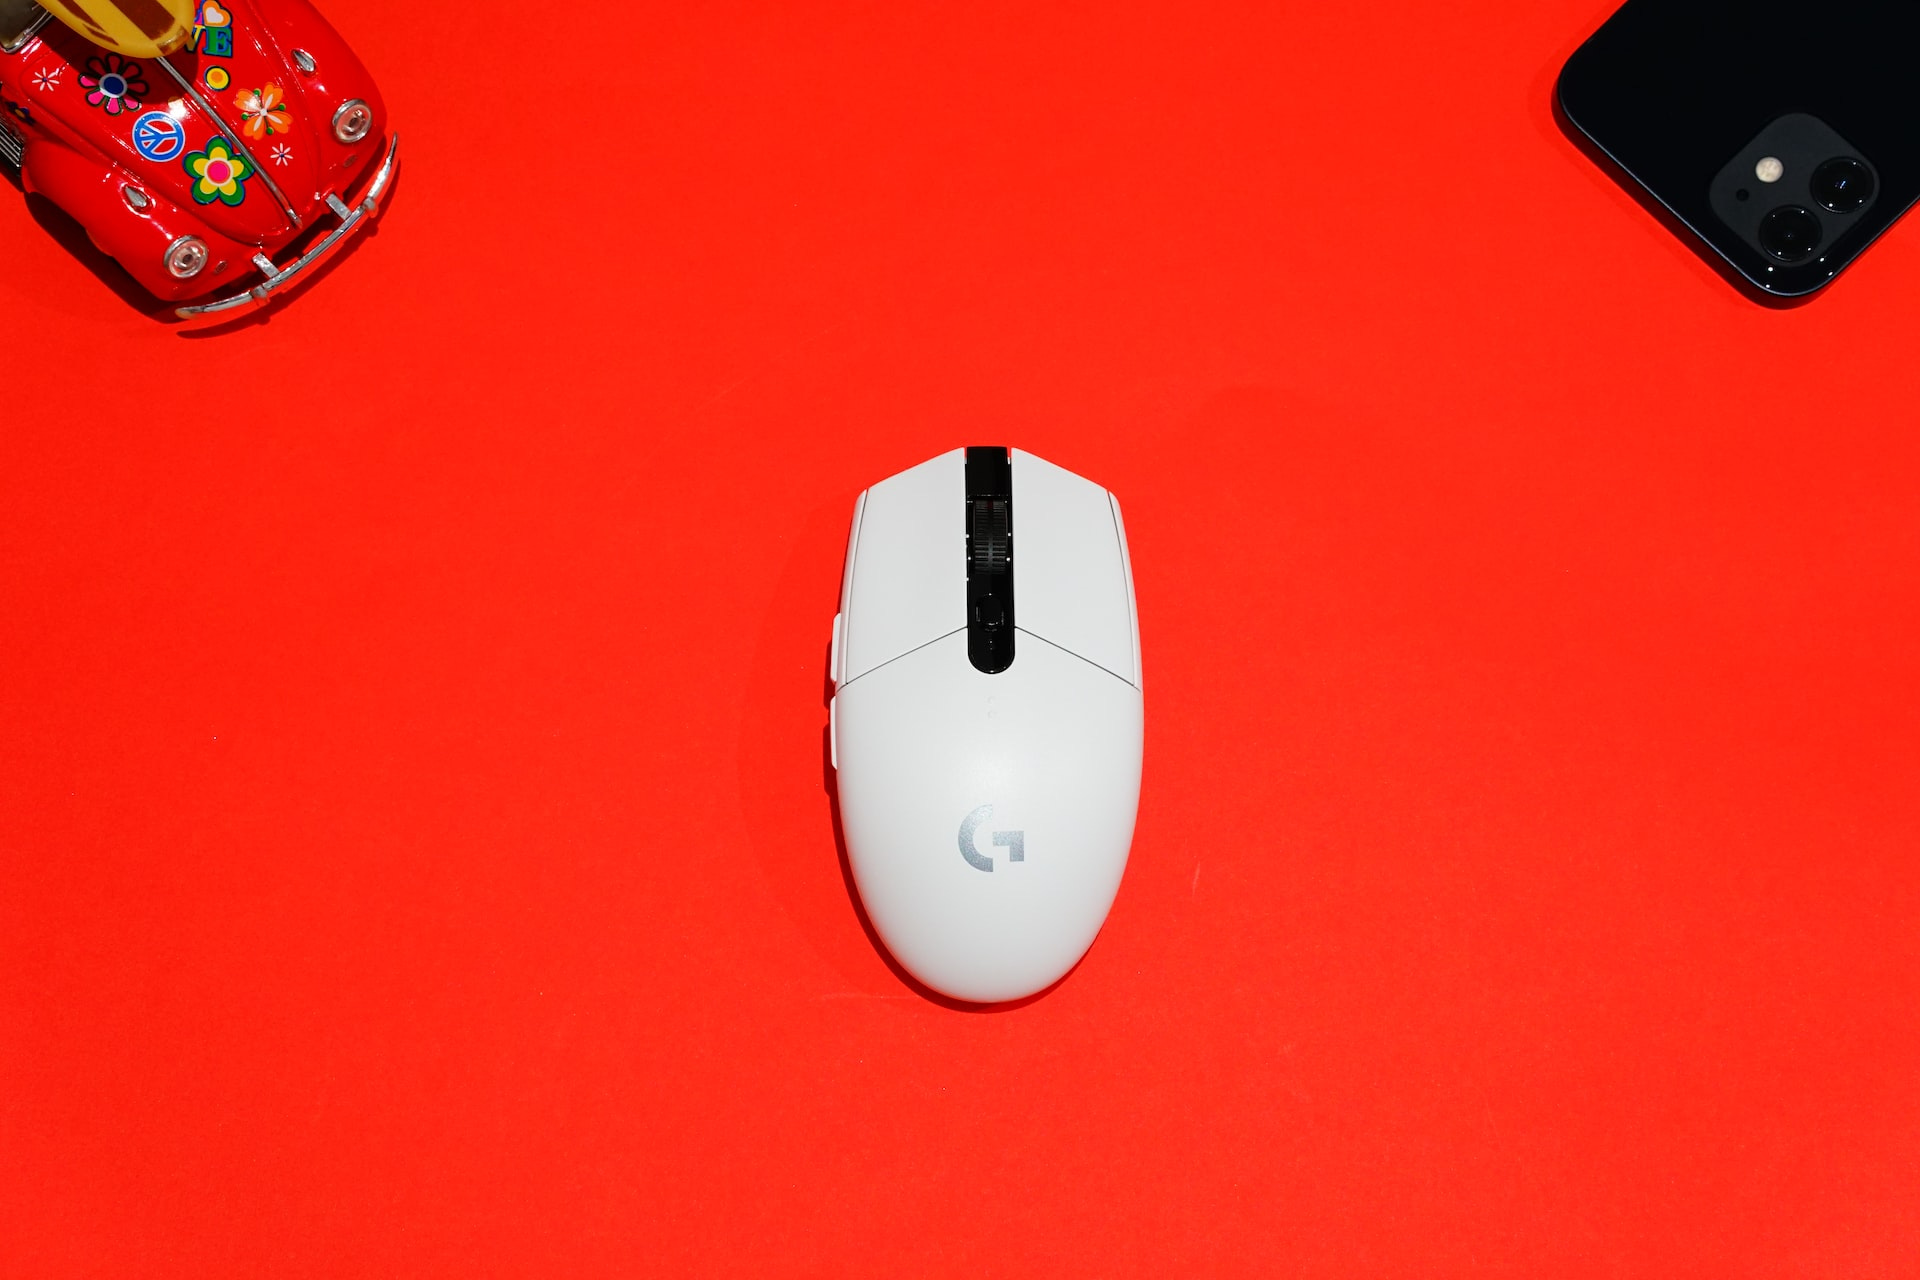 Un mouse bianco con il logo di Google al centro, su sfondo rosso. Dagli angoli superiori dell'immagine spuntano una macchina giocattolo rossa con decorazioni floreali e un cellulare con la cover nera.